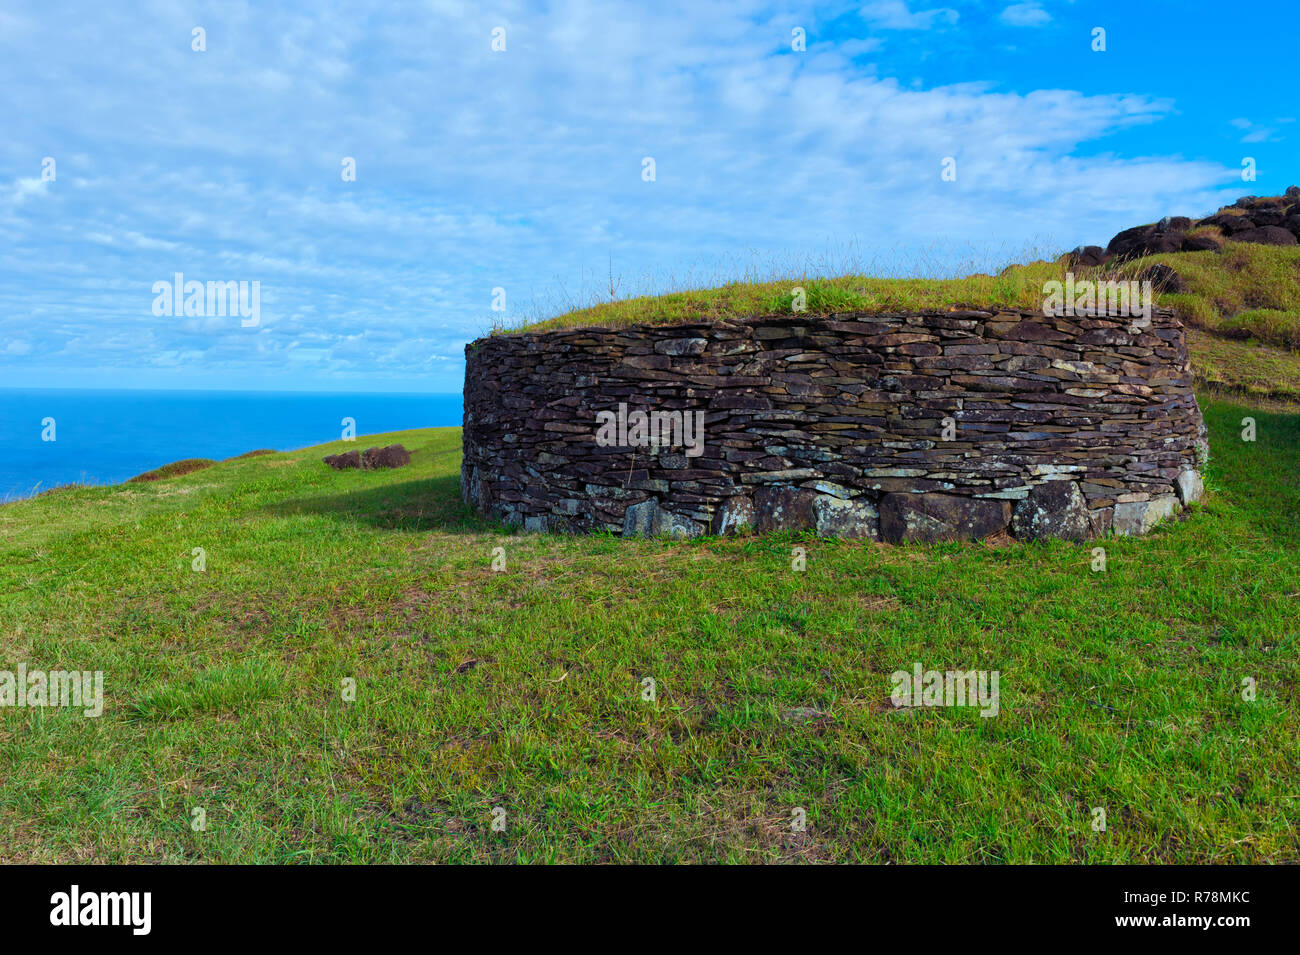 Maison en pierre restaurée, village cérémonial d'Orongo, UNESCO World Heritage Site, parc national de Rapa Nui, l'île de Pâques, Chili Banque D'Images